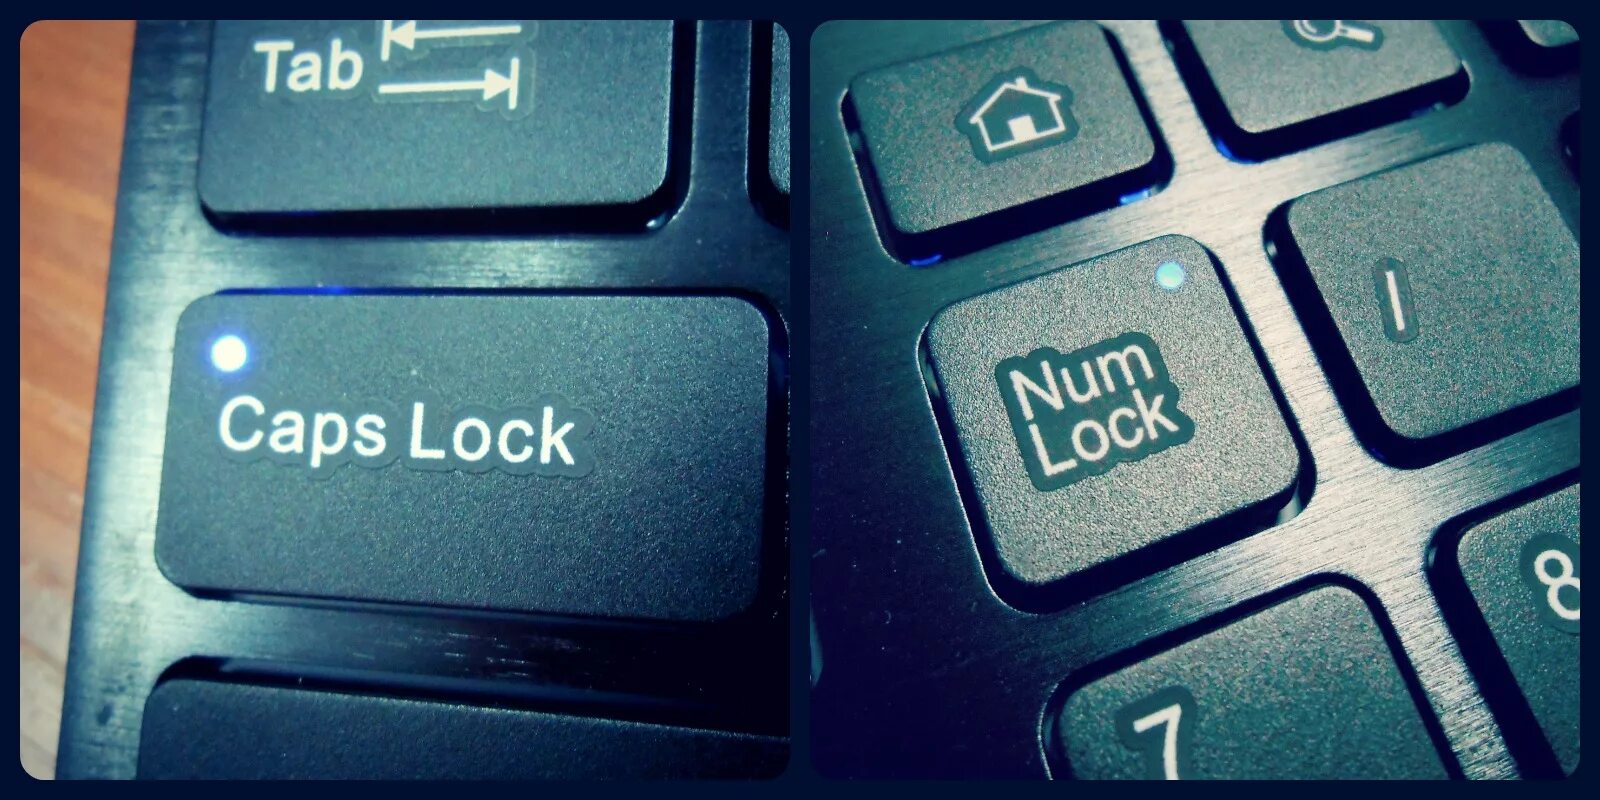 Клавиши caps Lock. Caps Lock на клавиатуре. Капс лок. Капслок на клавиатуре. Lock на русском языке